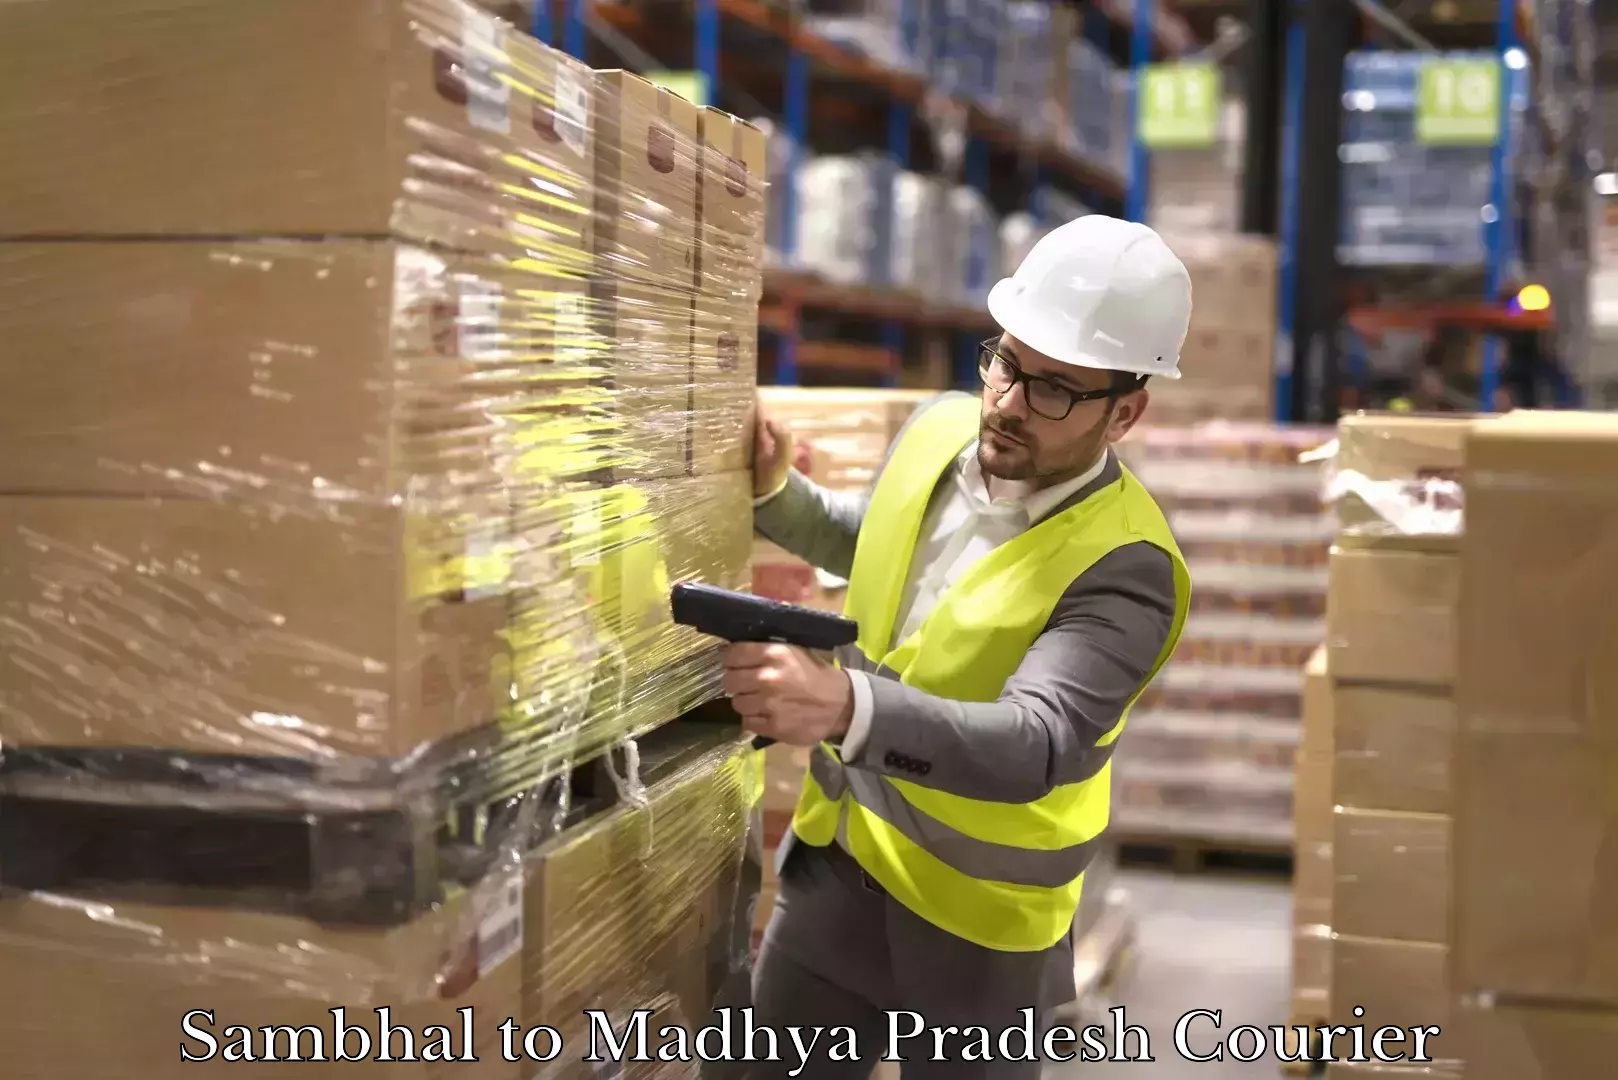 Customer-focused courier Sambhal to Madhya Pradesh